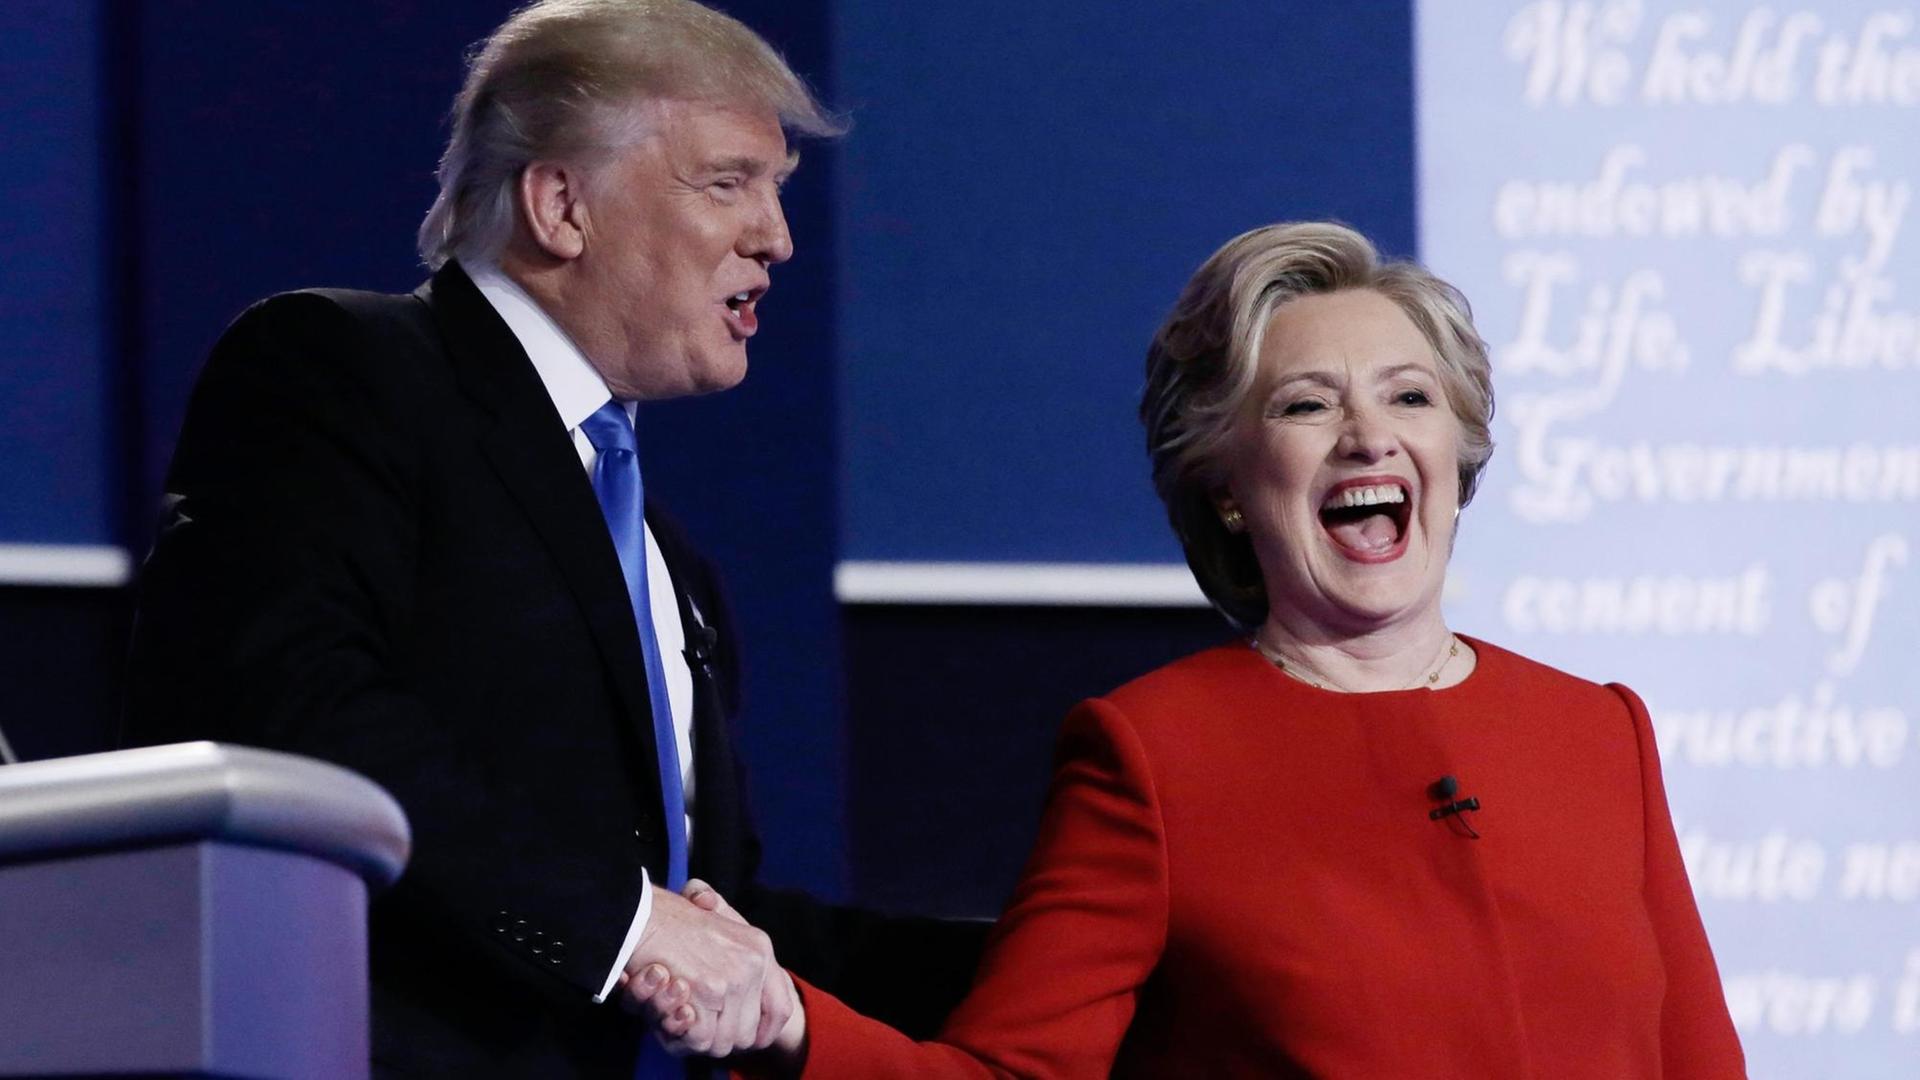 Donald Trump und Hillary Clinton schütteln sich am Ende des ersten Fernsehduells die Hände.